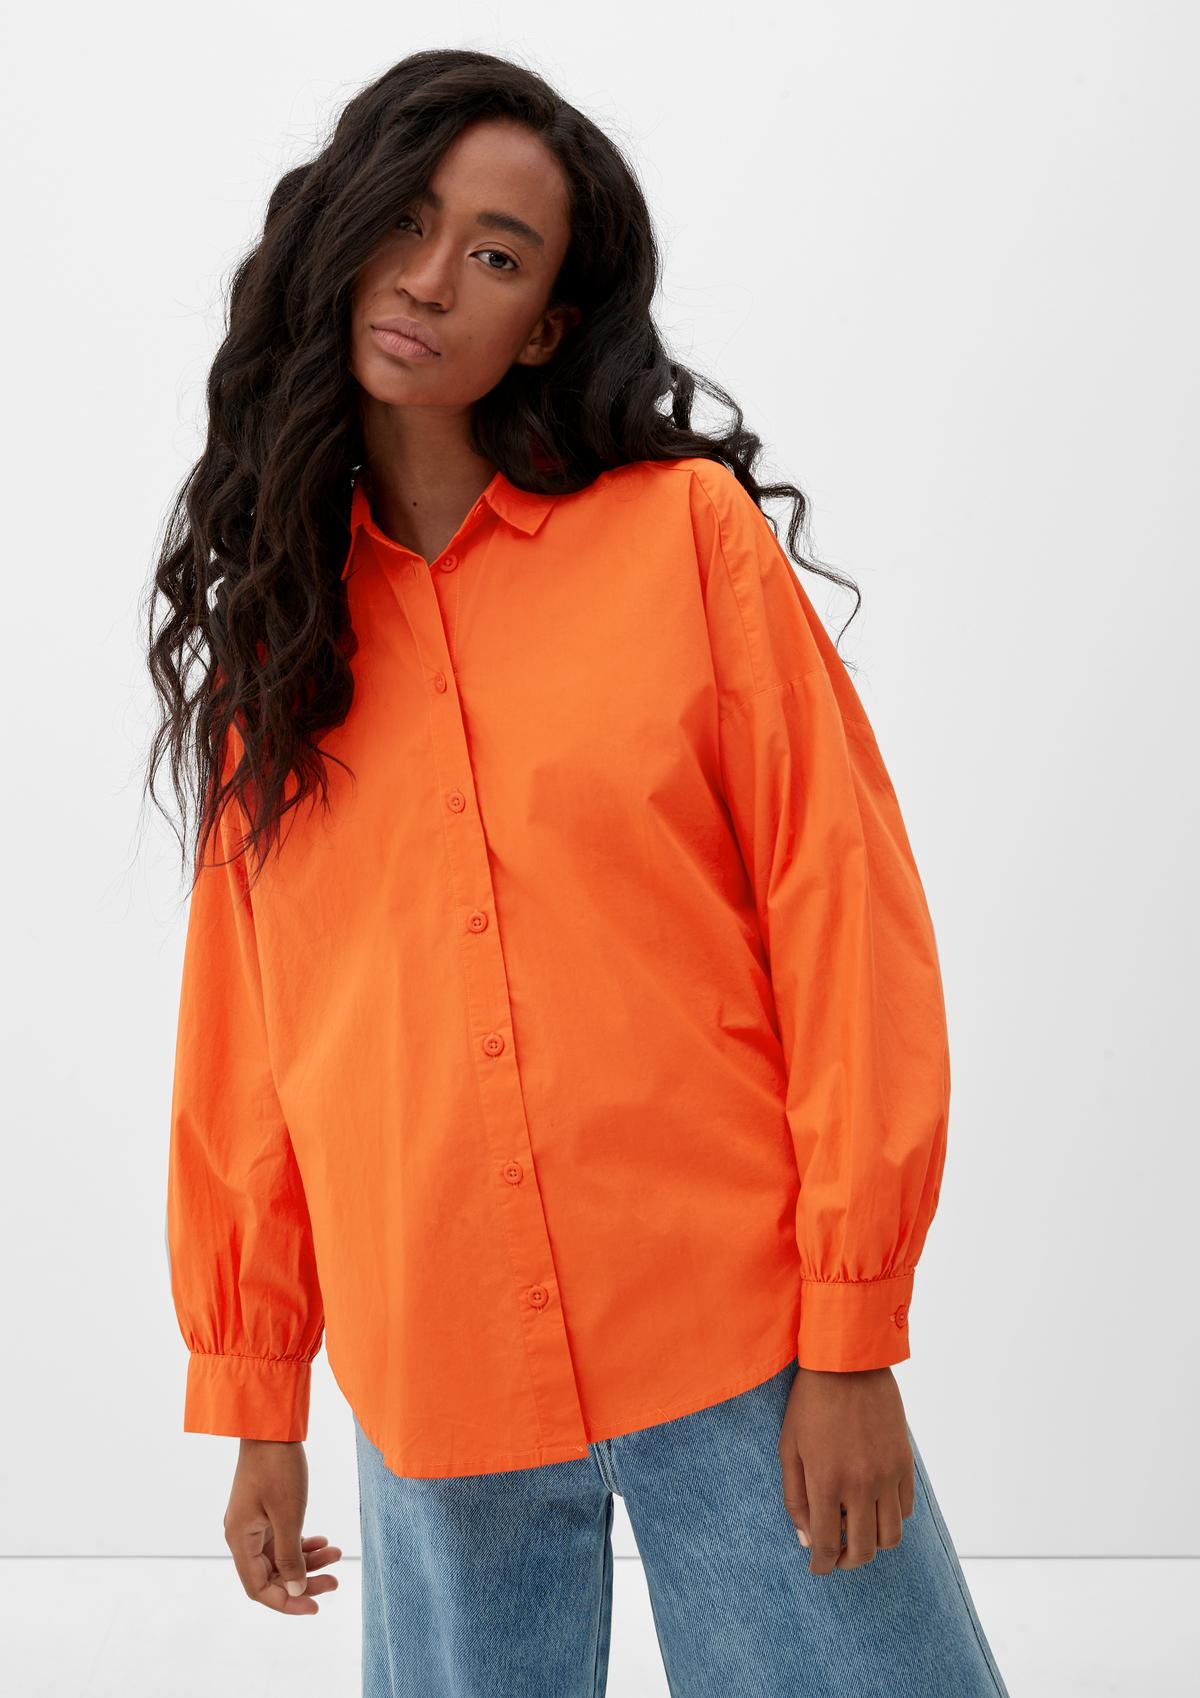 - Leichte orange Alloverprint mit Bluse